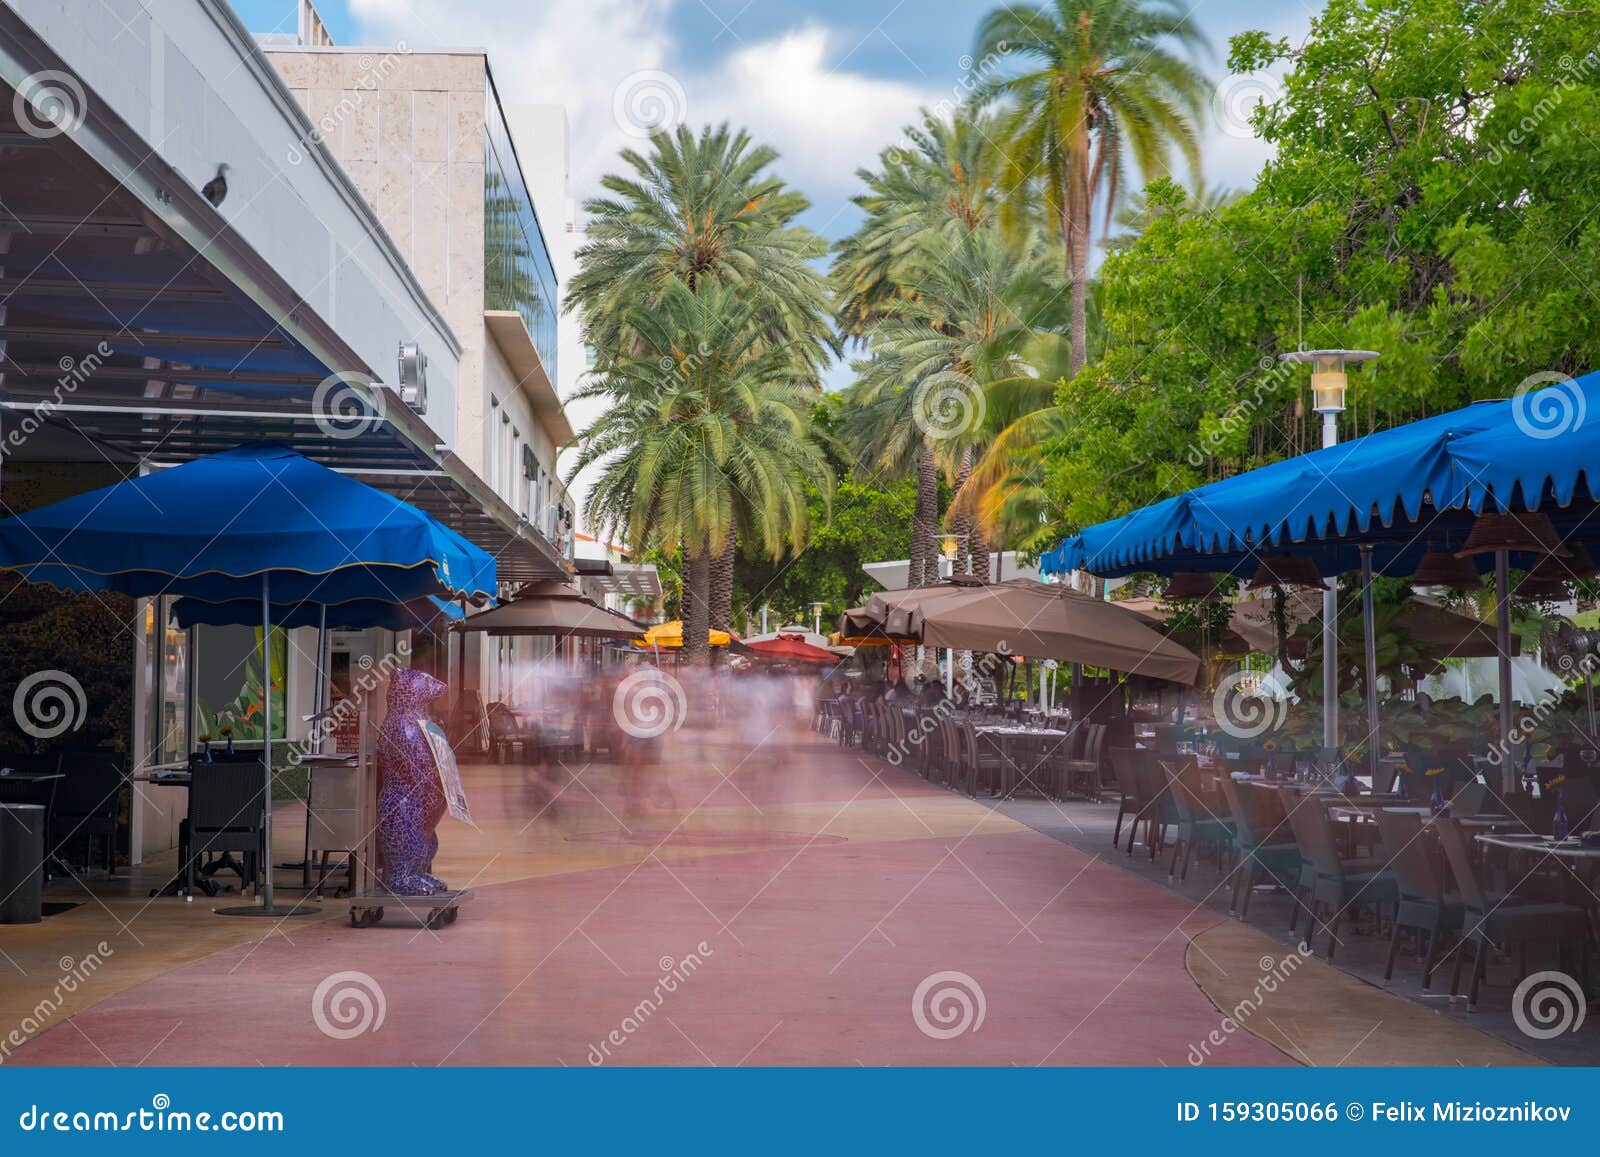 miami beach lincoln road promenade shops and restaurants